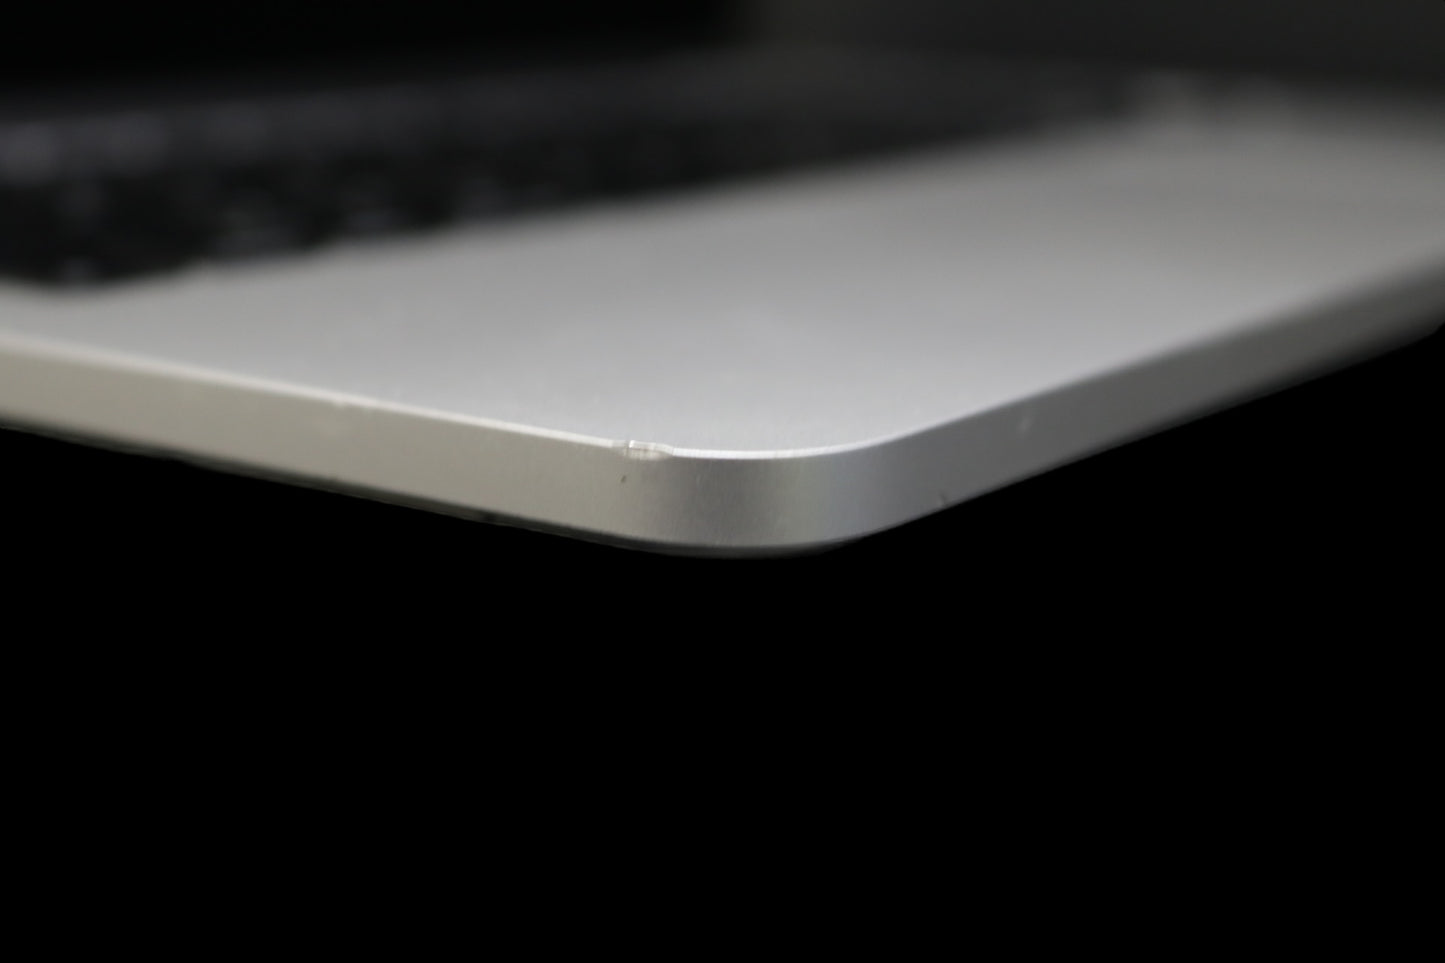 Apple Laptop Macbook Pro 13" 2015 A1502